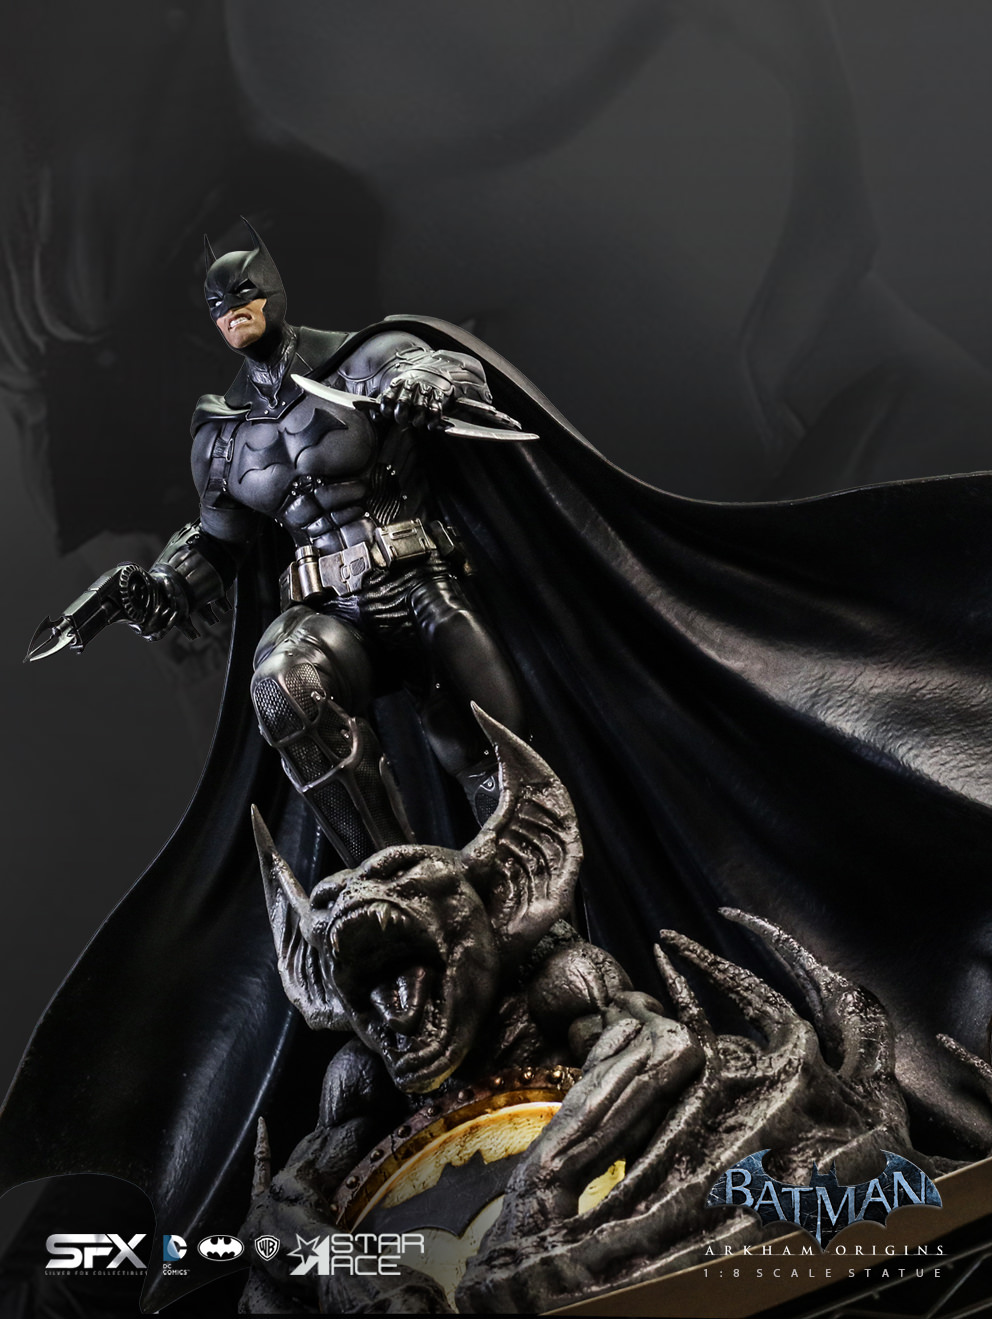 Batman Arkham Origins Exclusive Edition (Prototype Shown) View 20